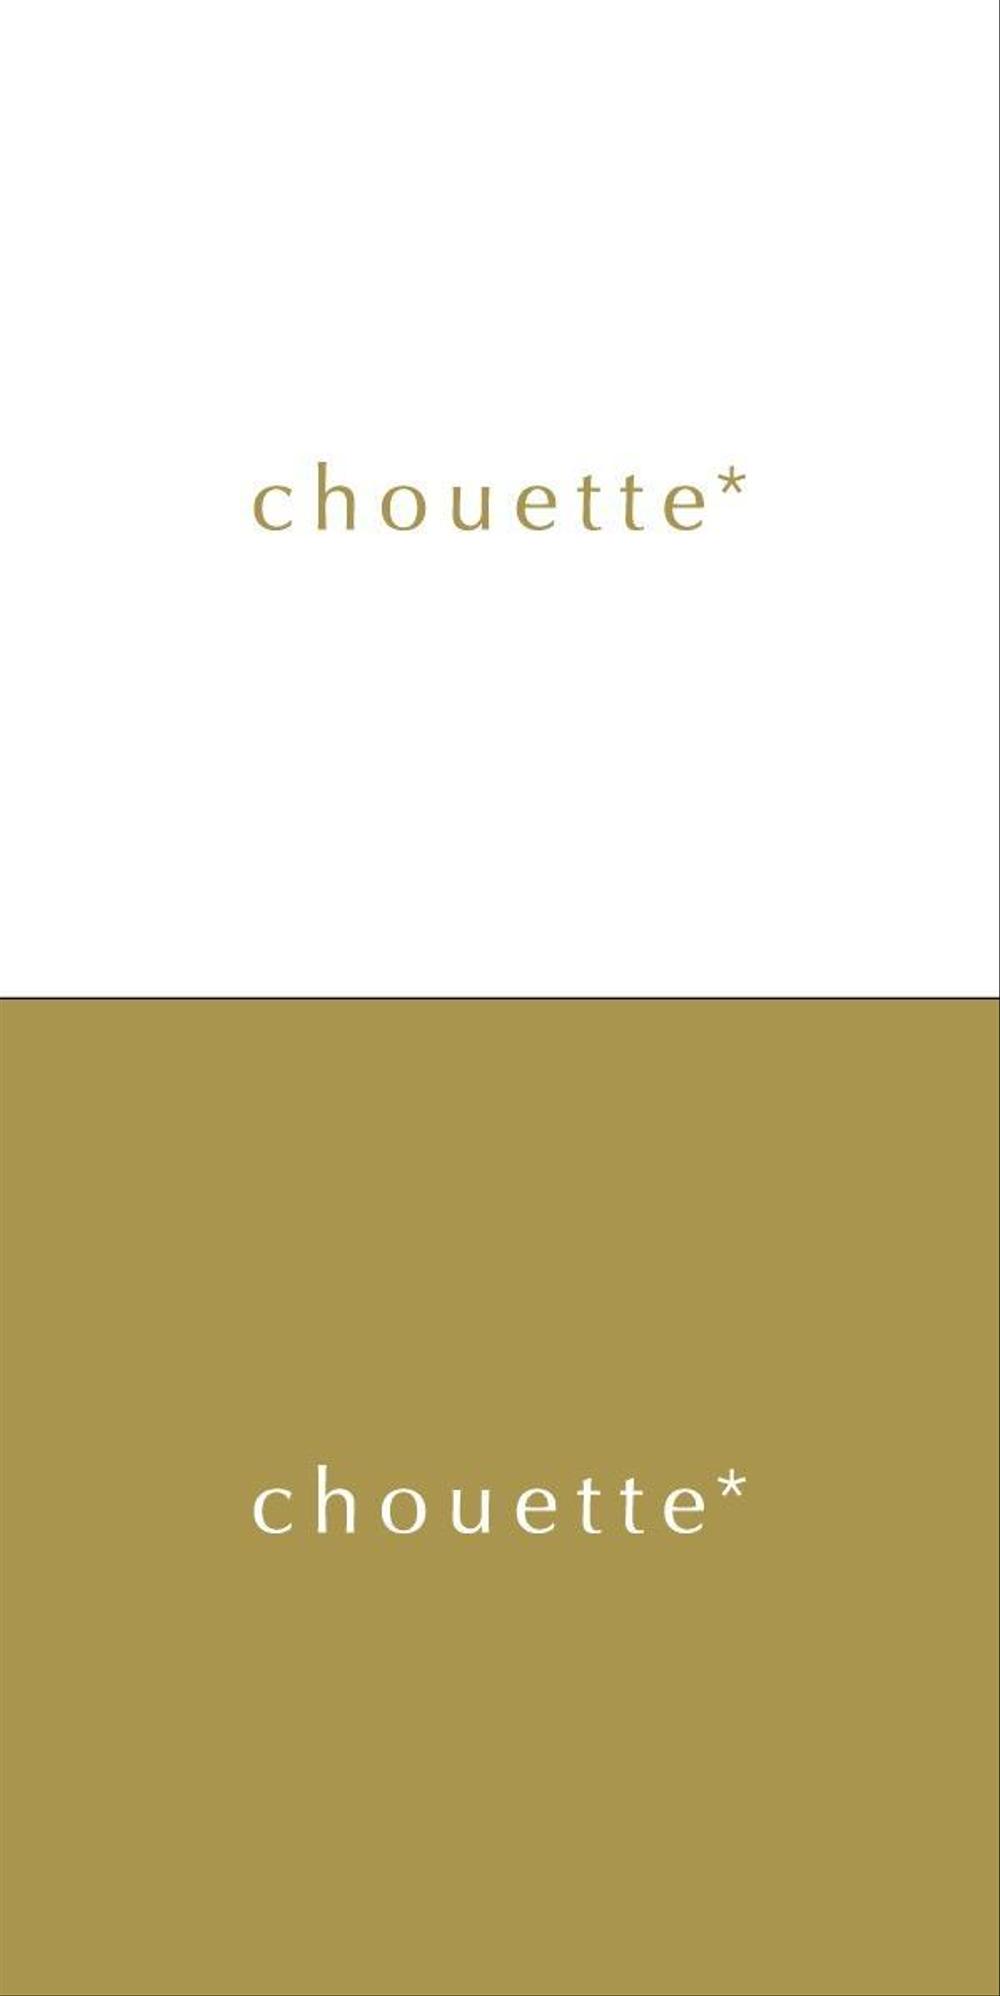 スキンケア雑貨「chouette（シュエット）」のブランドロゴの募集